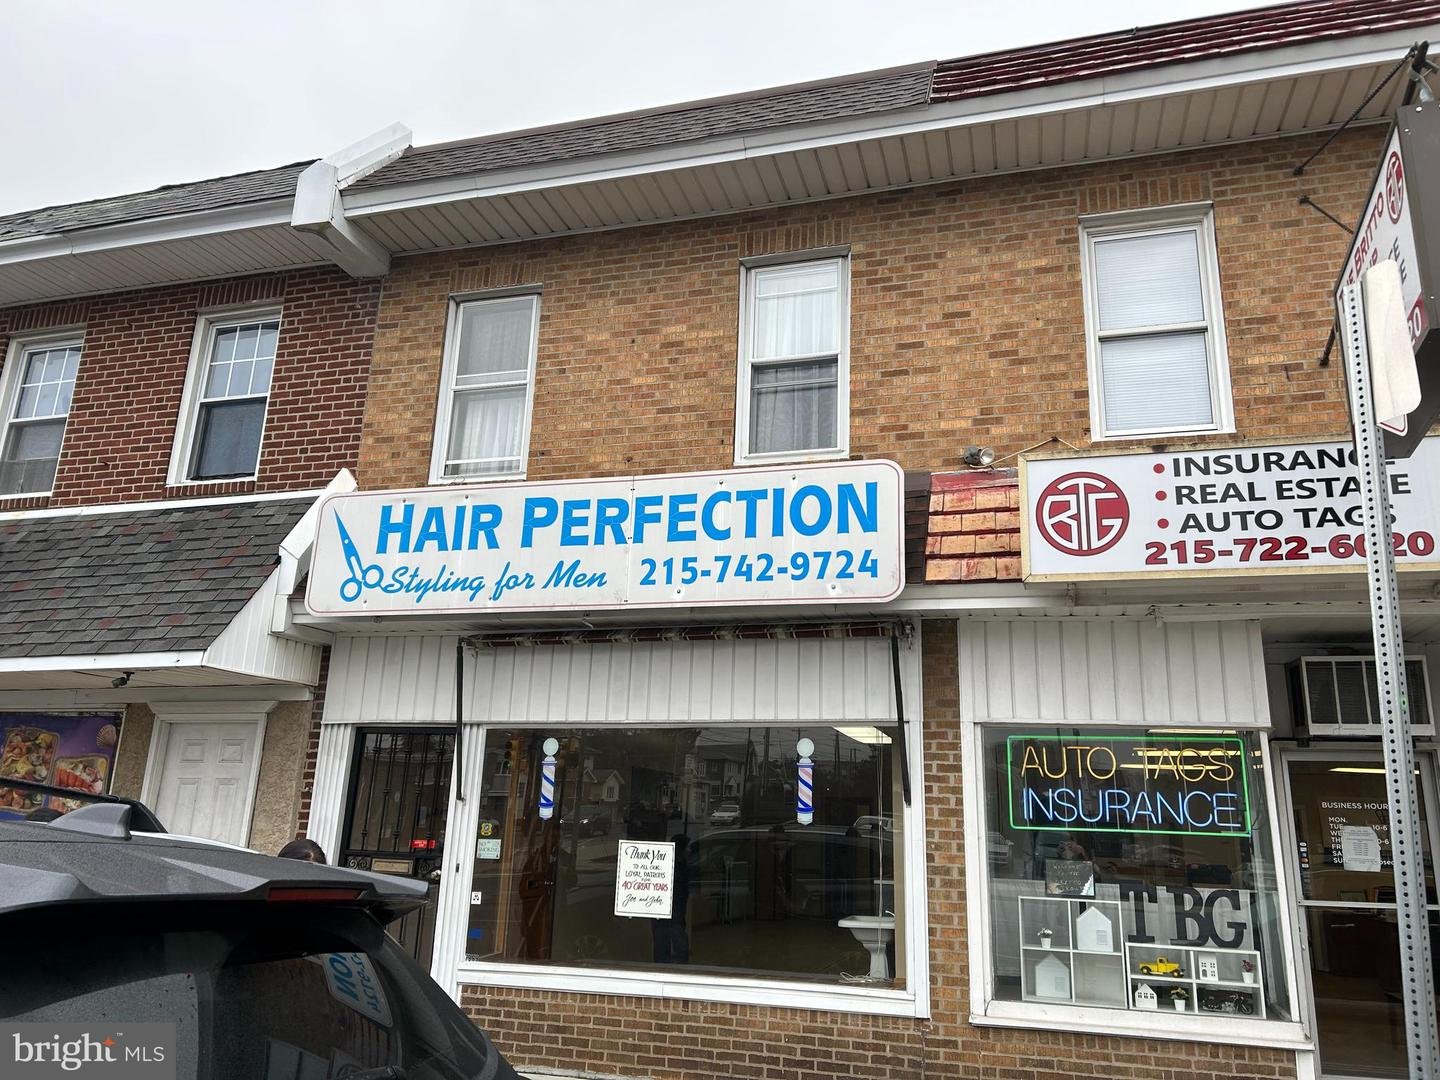 Classic Barber Shop - Wilmington, Delaware Classic Barber Shop